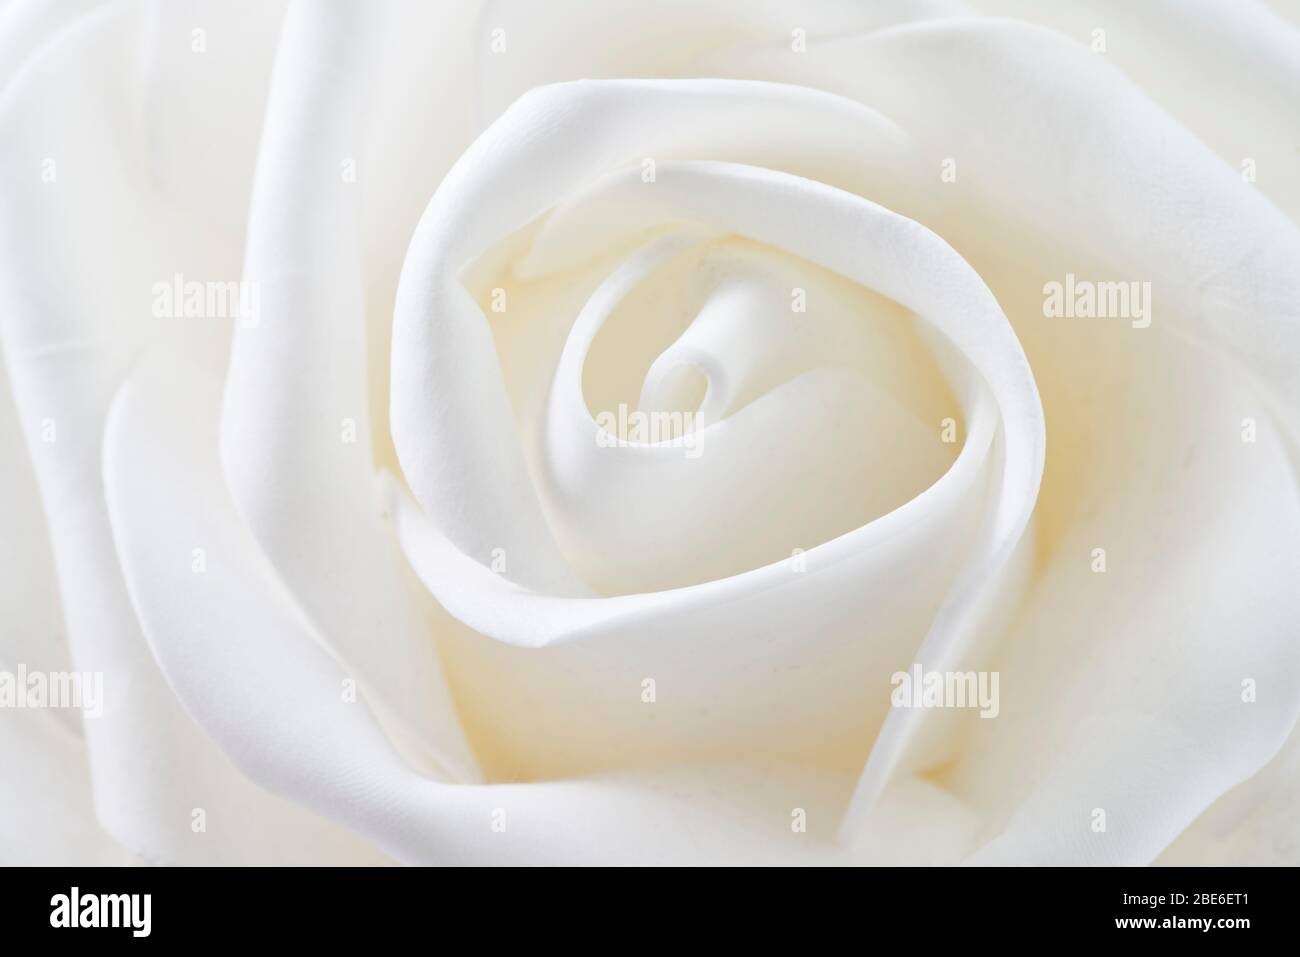 formas onduladas en forma de flor blanca Foto de stock